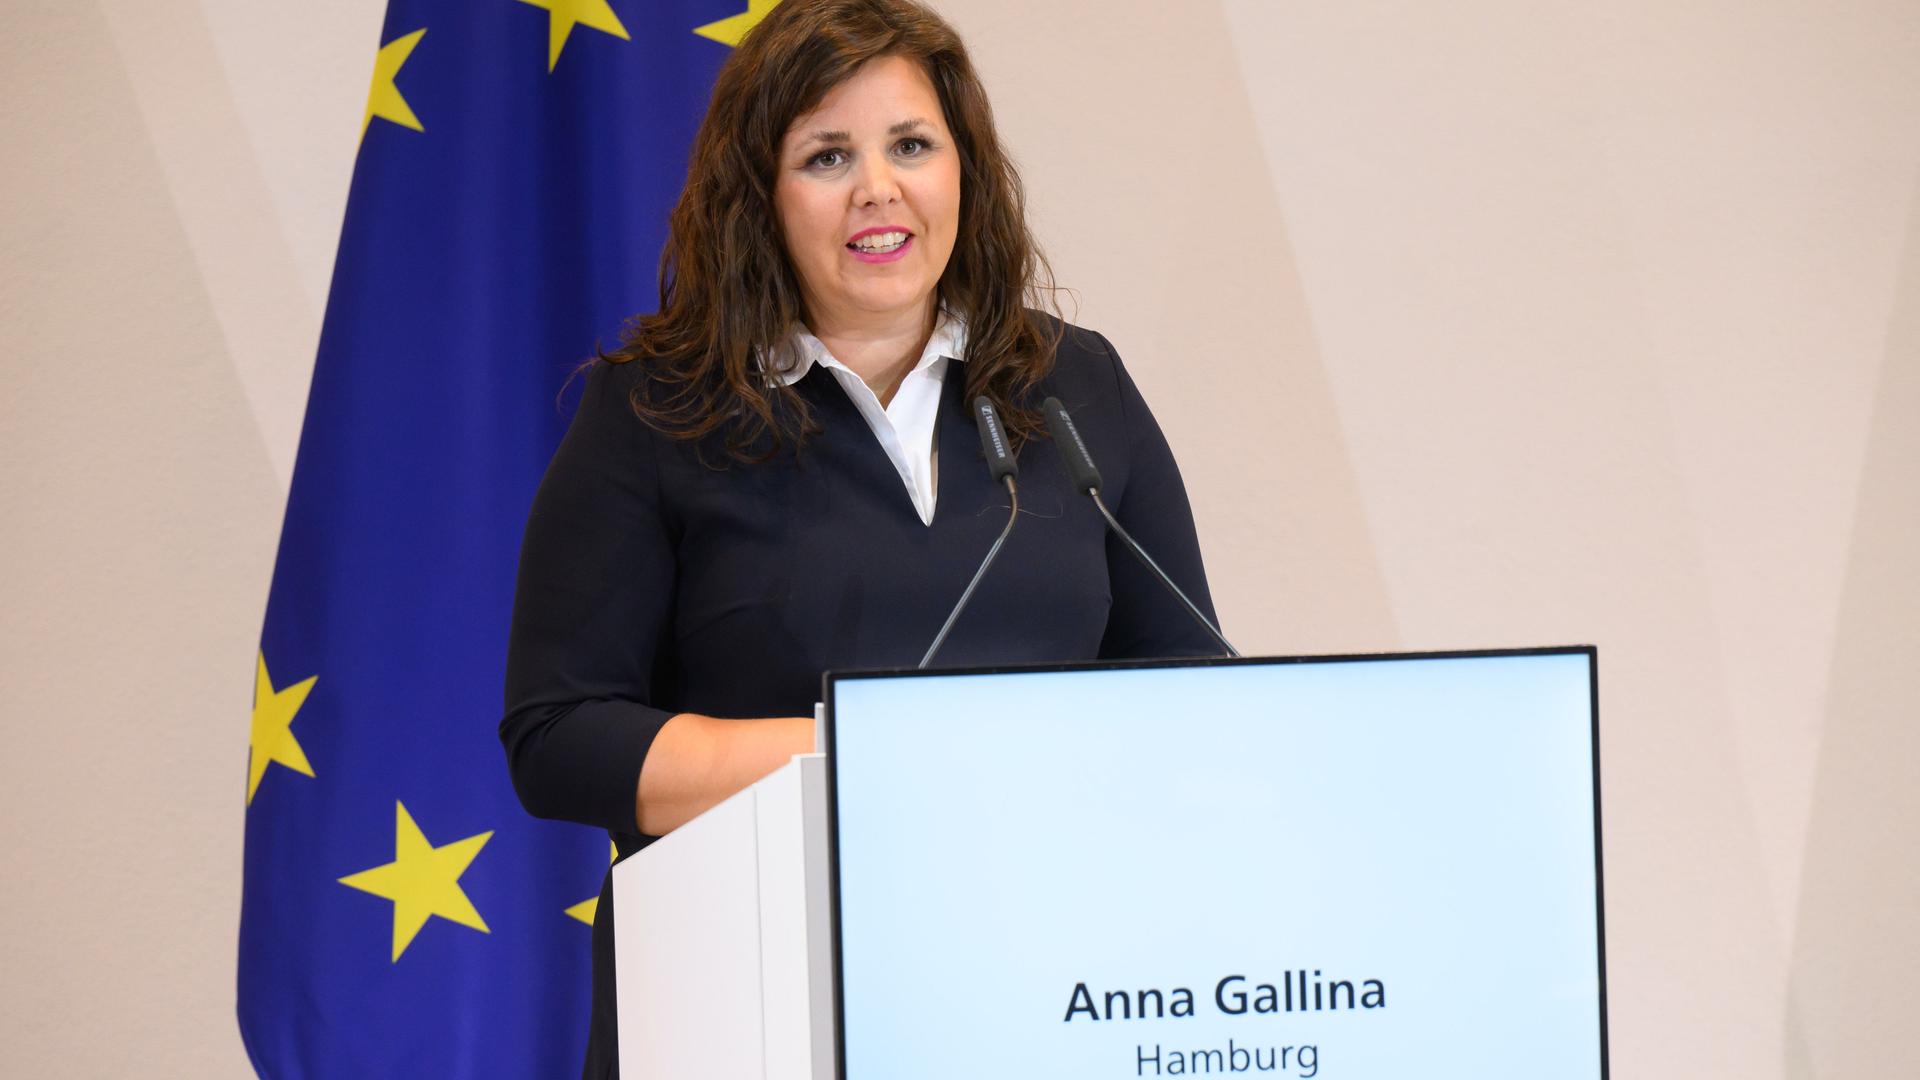 Anna Gallina (Grüne), Justizsenatorin Hamburg, steht an einem Rednerpult und spricht. Im Hintergrund ist eine Europa-Flagge zu sehen. 